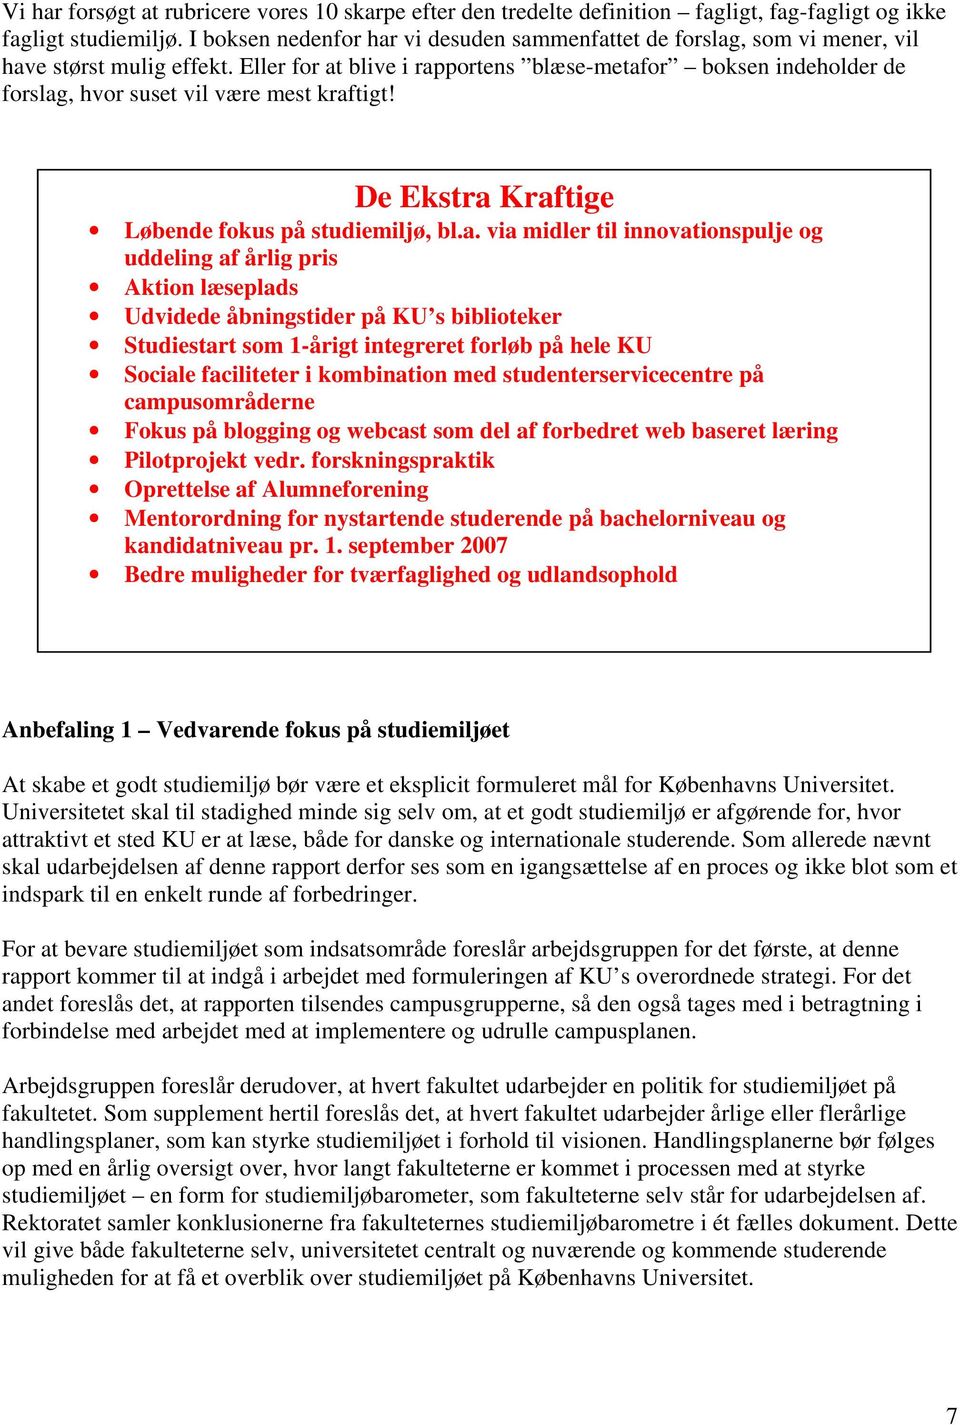 K Ø B E N H A V N S U I V E R S I T E T. Mærk suset. 10 skarpe til et studiemiljø. på Københavns Universitet - PDF Download